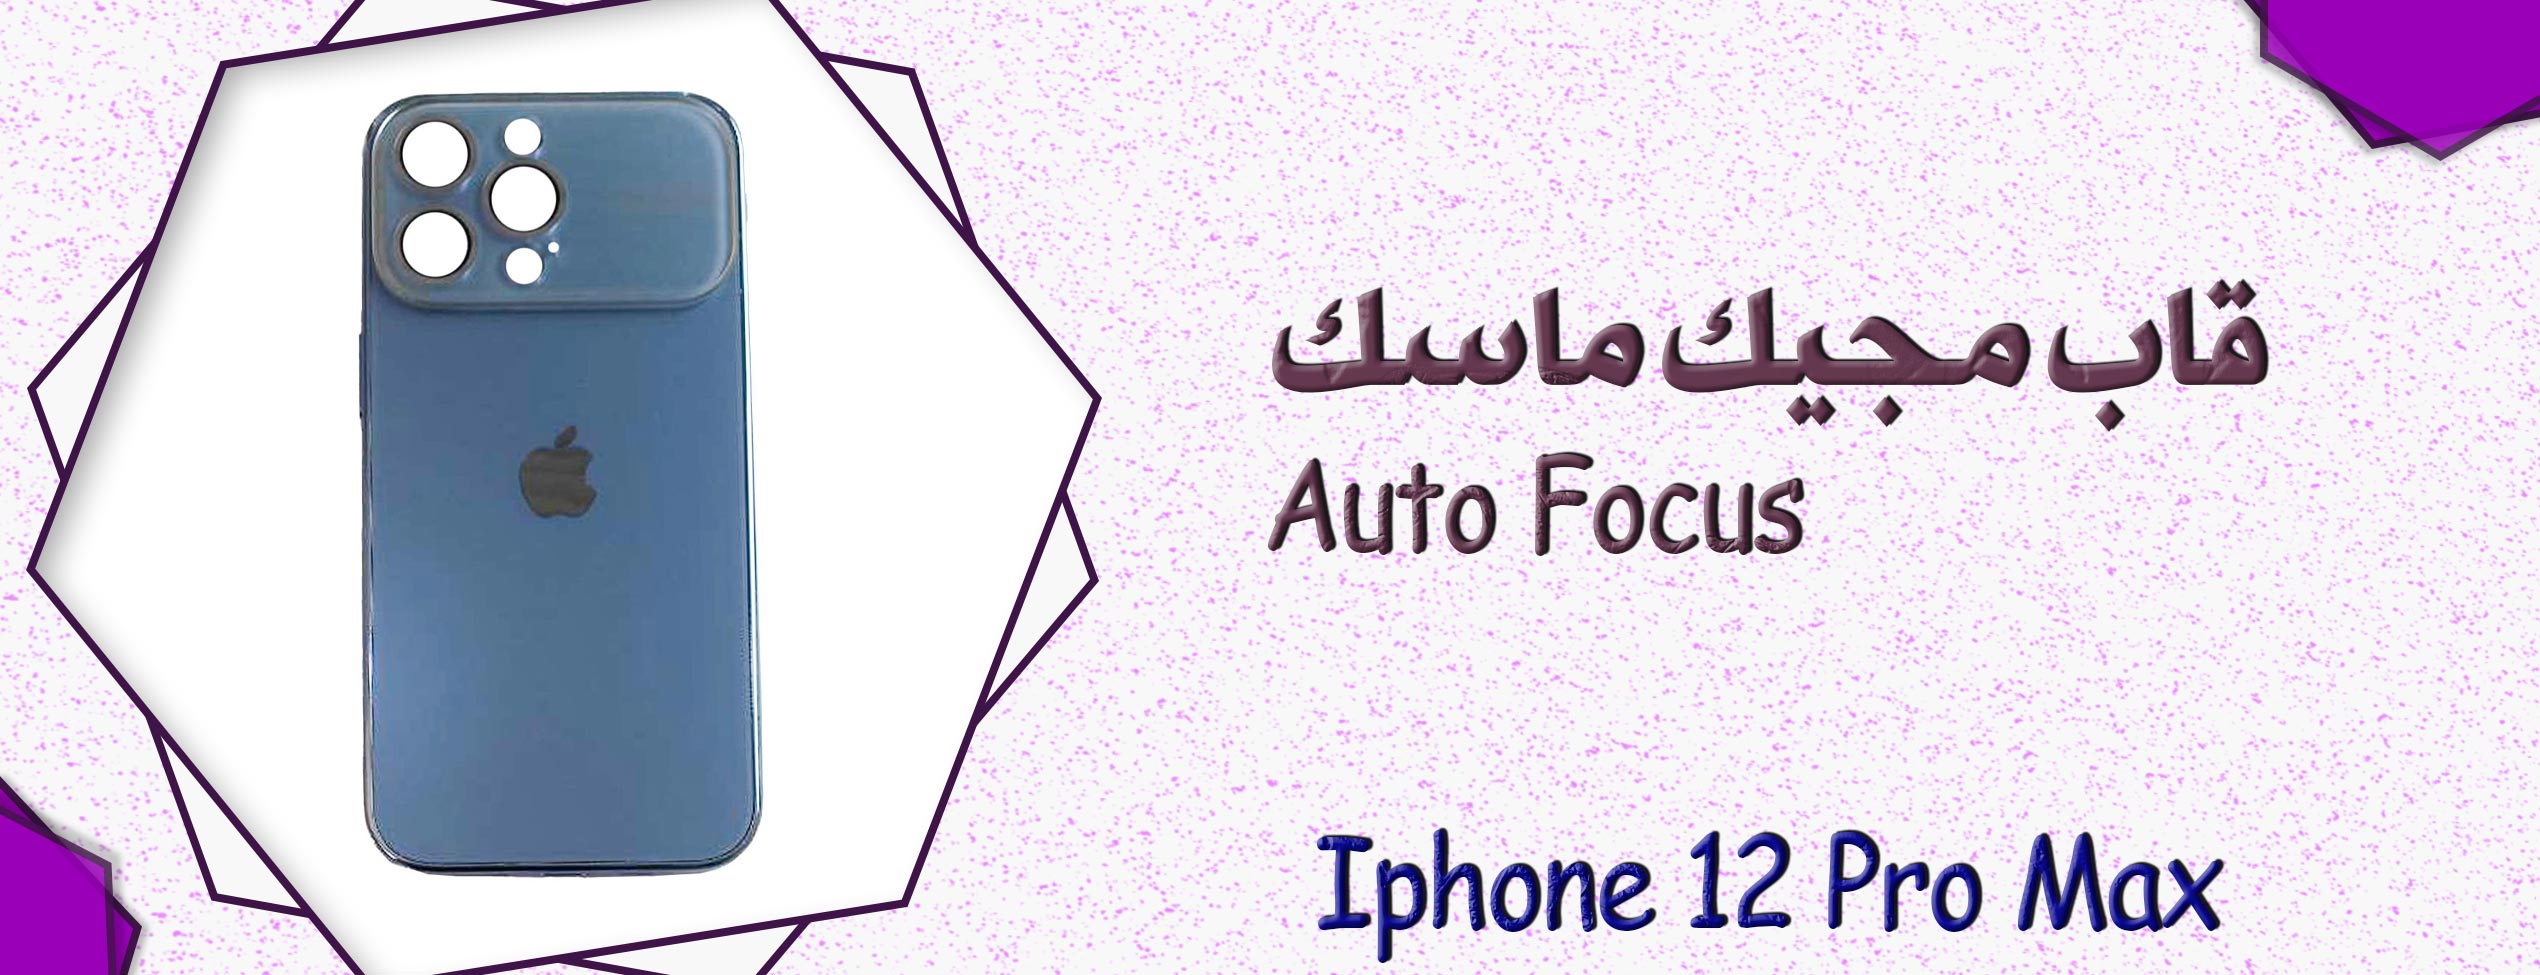 قاب مجیک ماسک Auto Focus گوشی موبایل آیفون Iphone 12 Pro Max